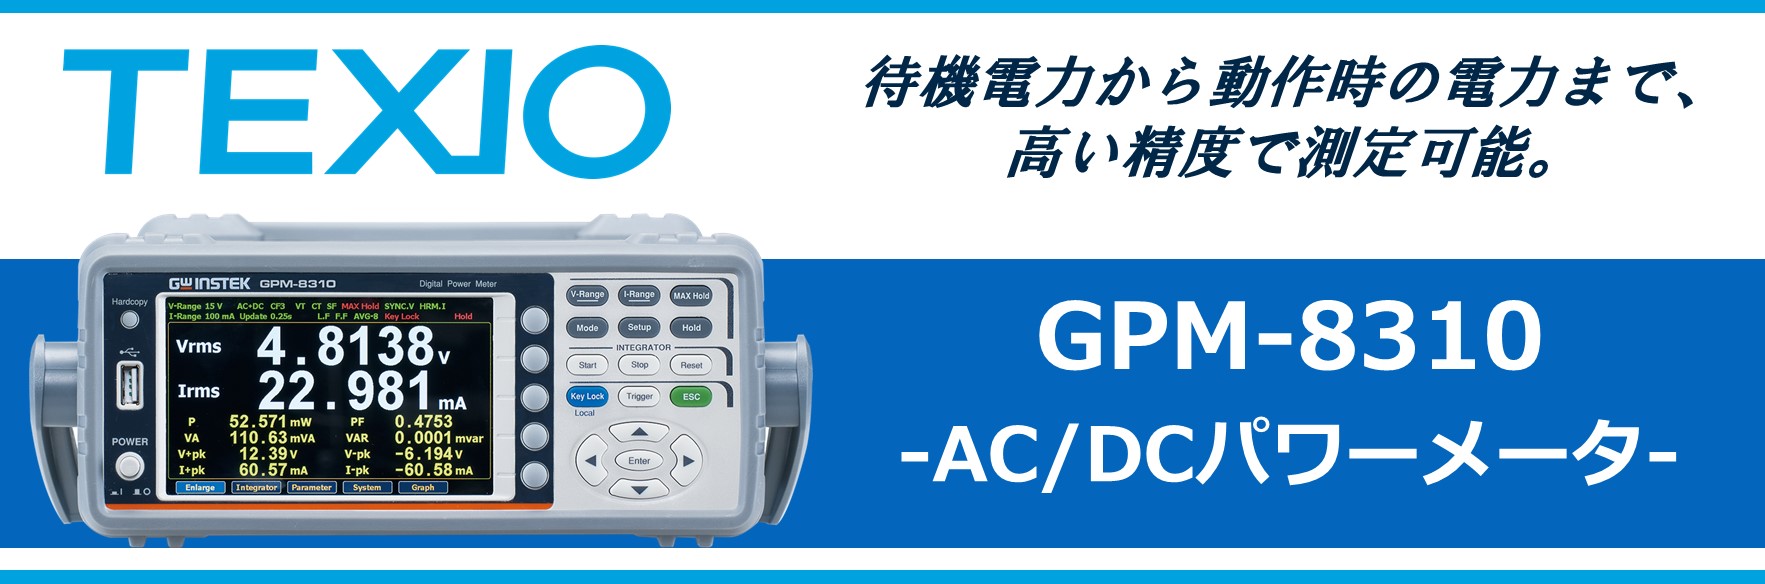 【新製品】GPM-8310 AC/DCパワーメータ